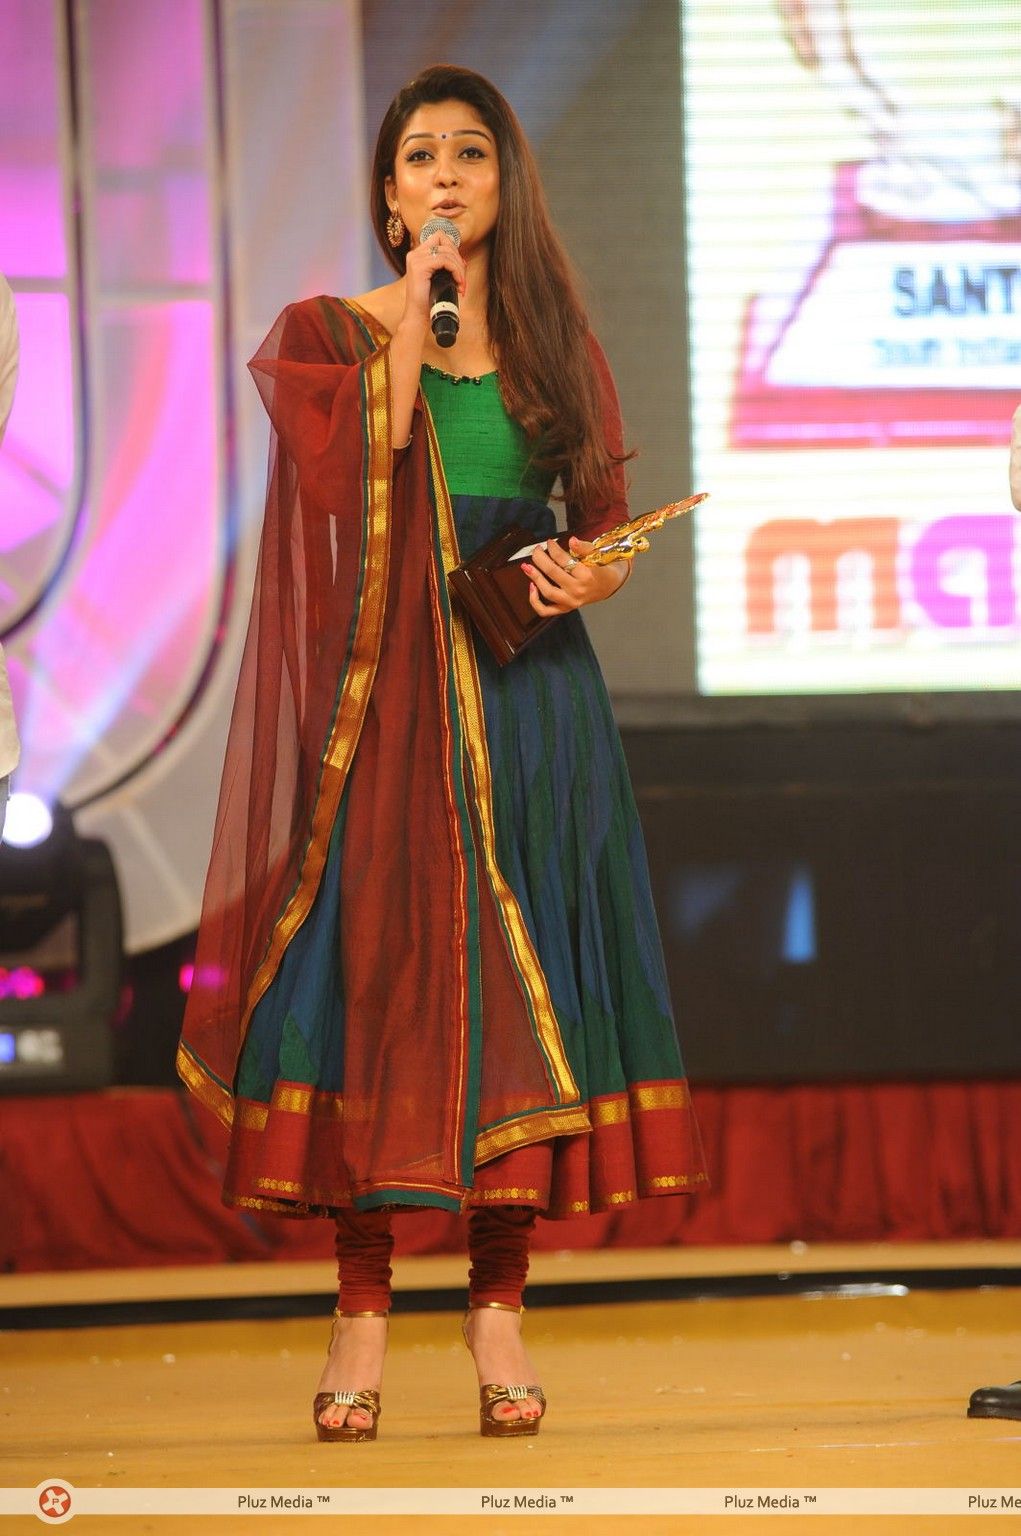 Nayanthara - Heroines at Santosham Film Awards 2012 - Photos | Picture 250159